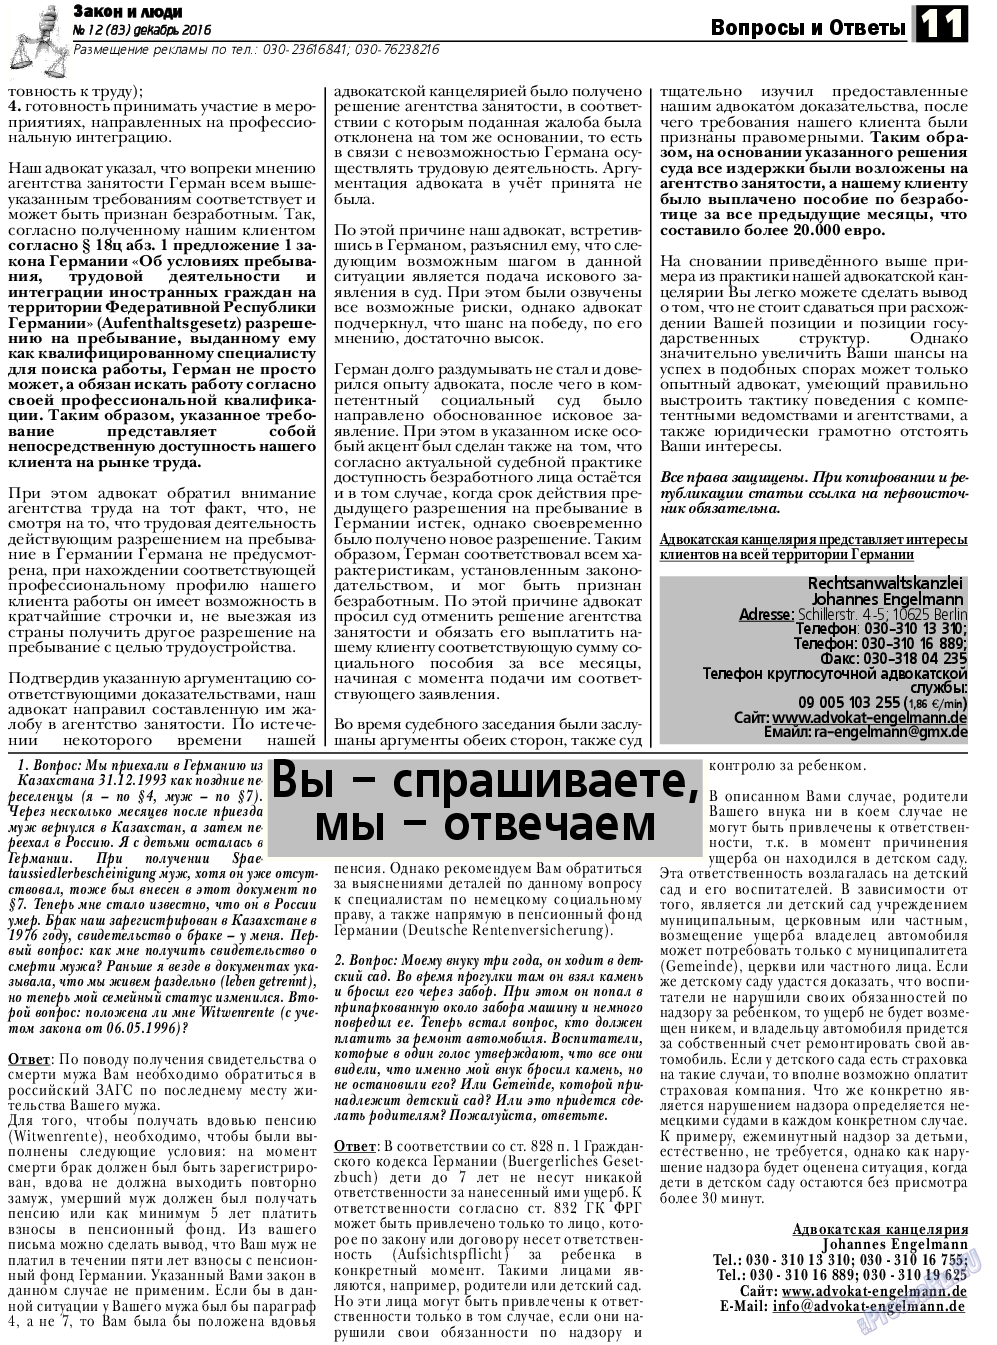 Закон и люди, газета. 2016 №12 стр.11